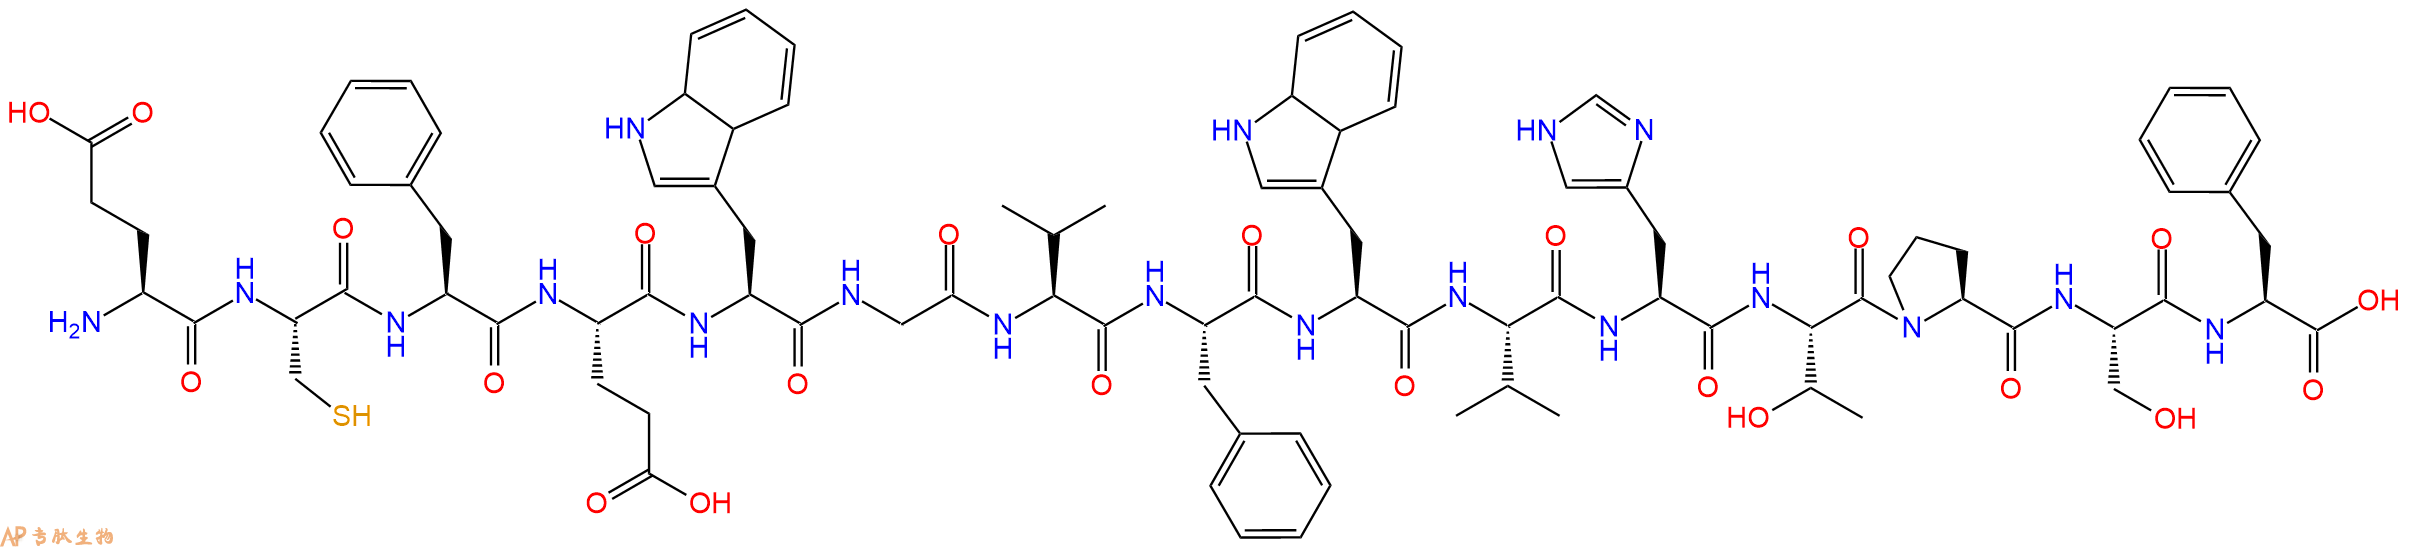 多肽ECFEWGVFWVHTPSF的参数和合成路线|三字母为Glu-Cys-Phe-Glu-Trp-